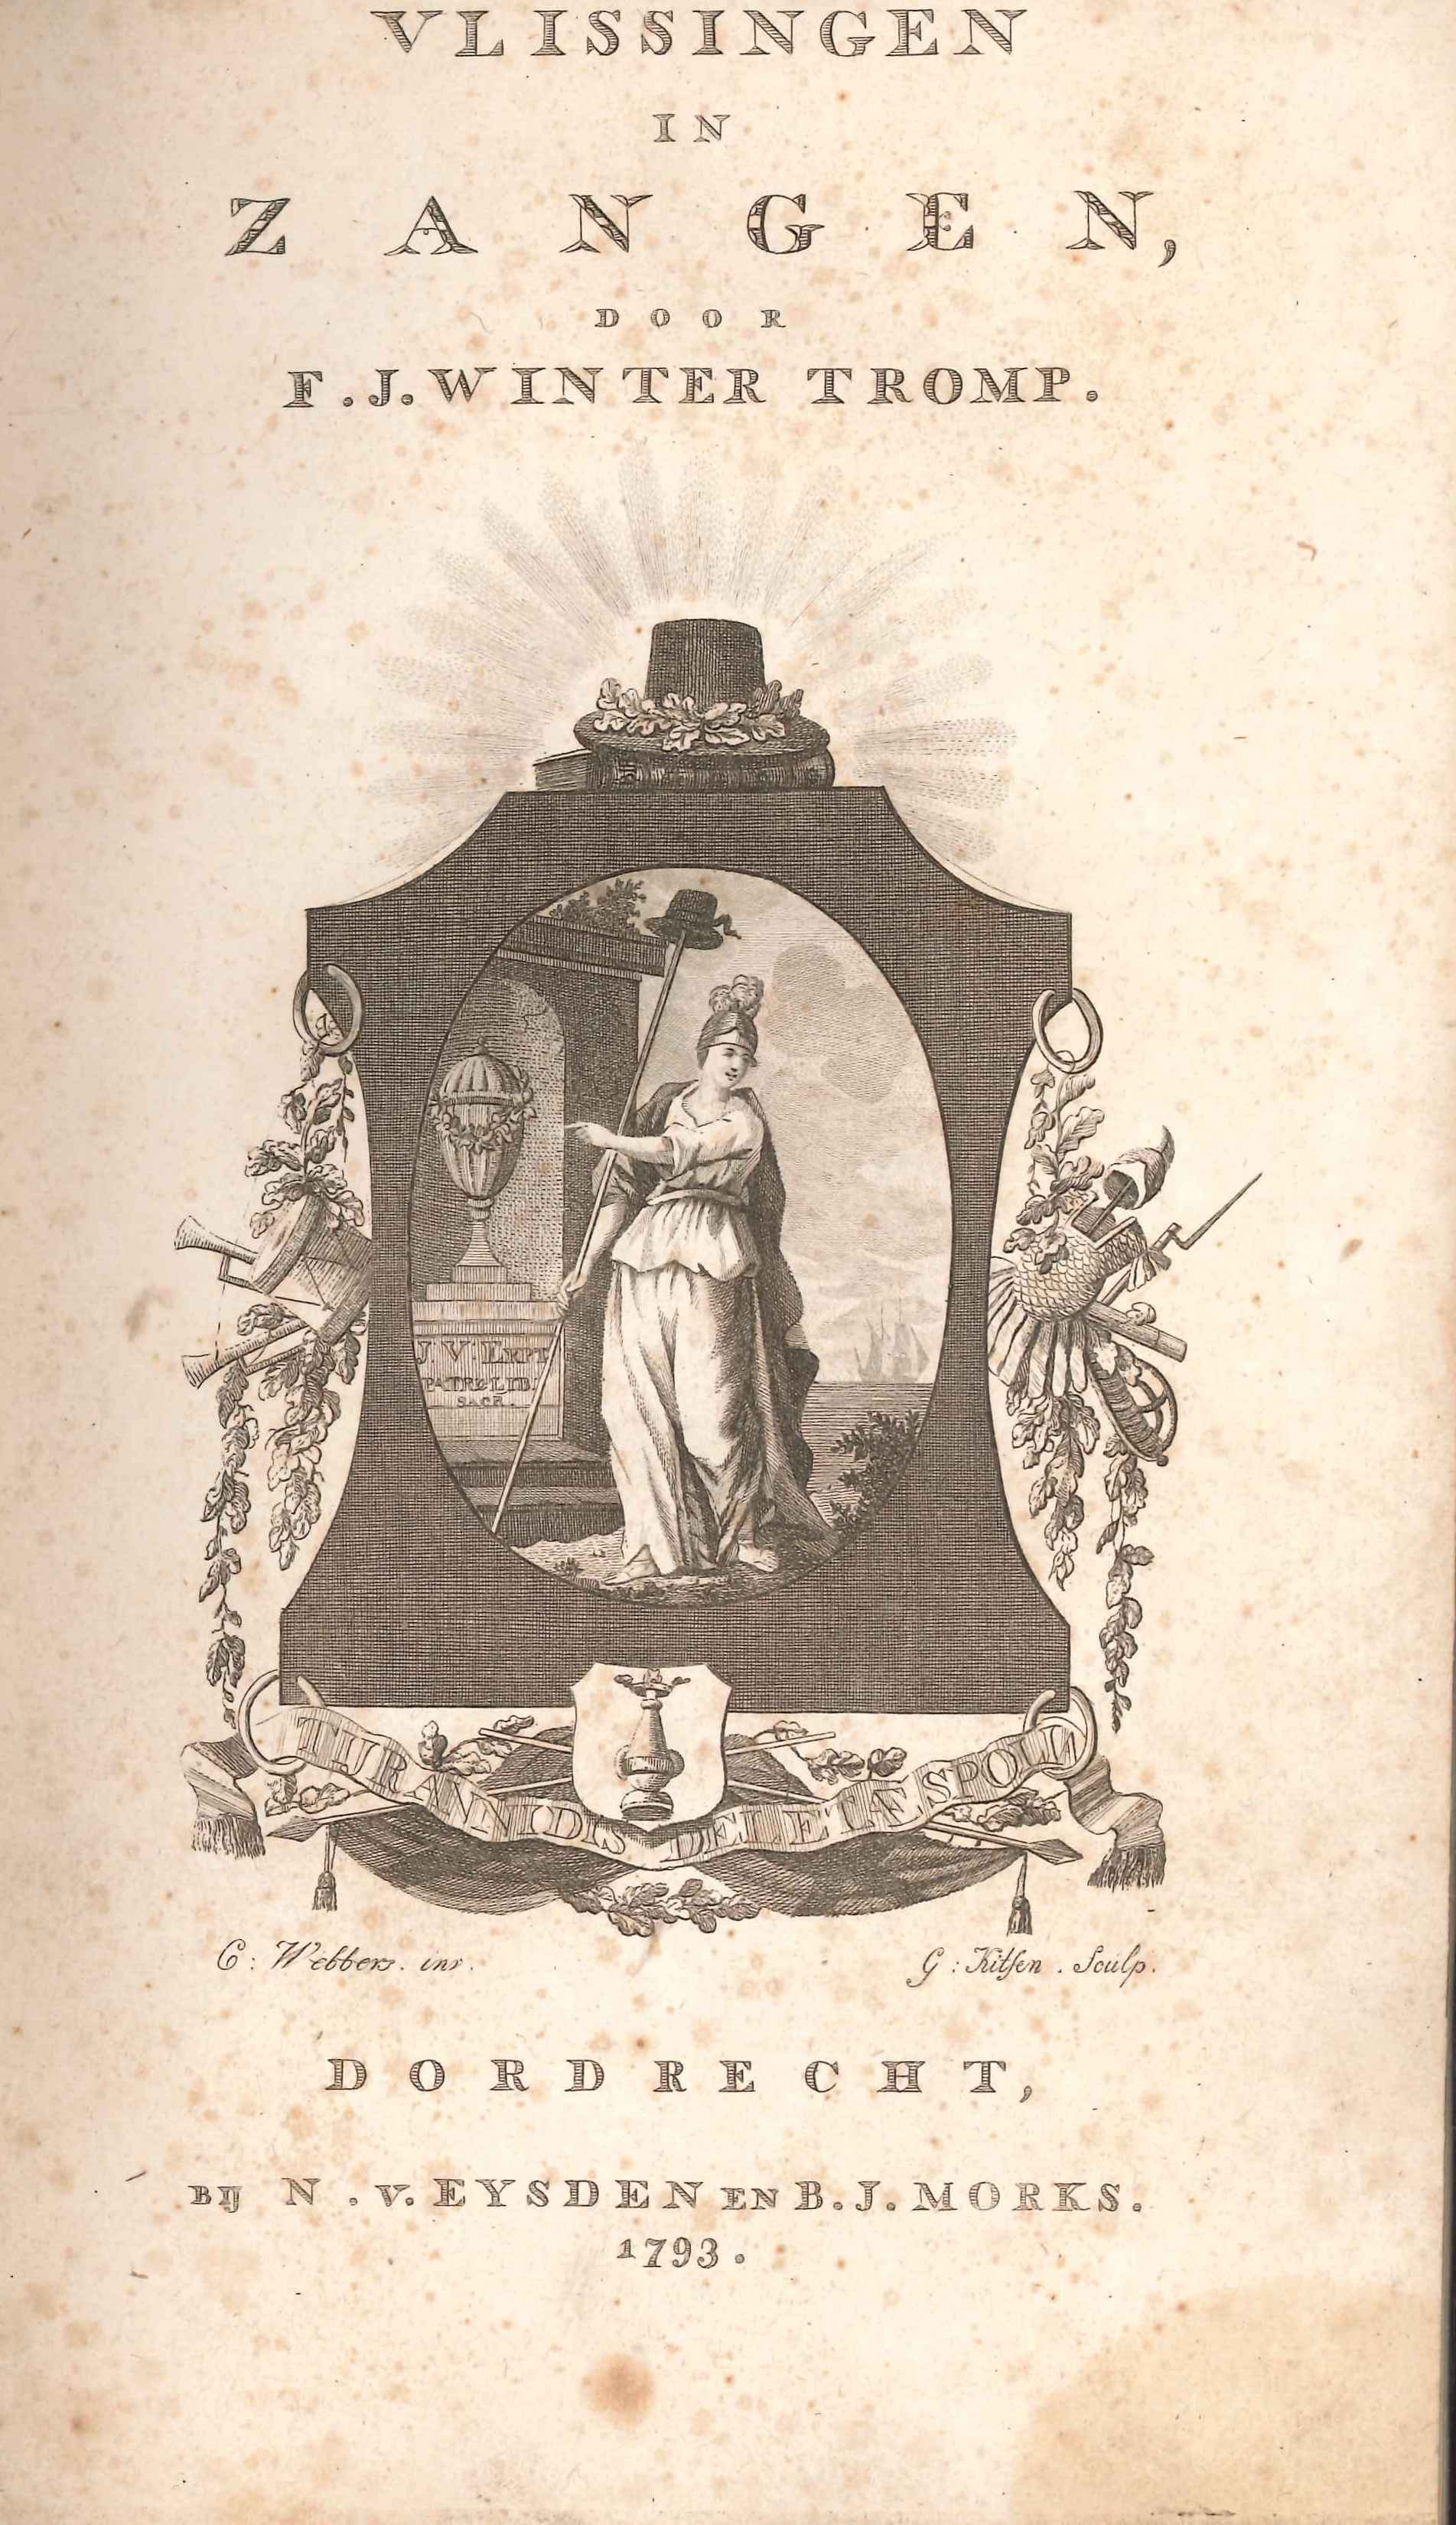 Liederenbundel 'Vlissingen in zangen', 1793.